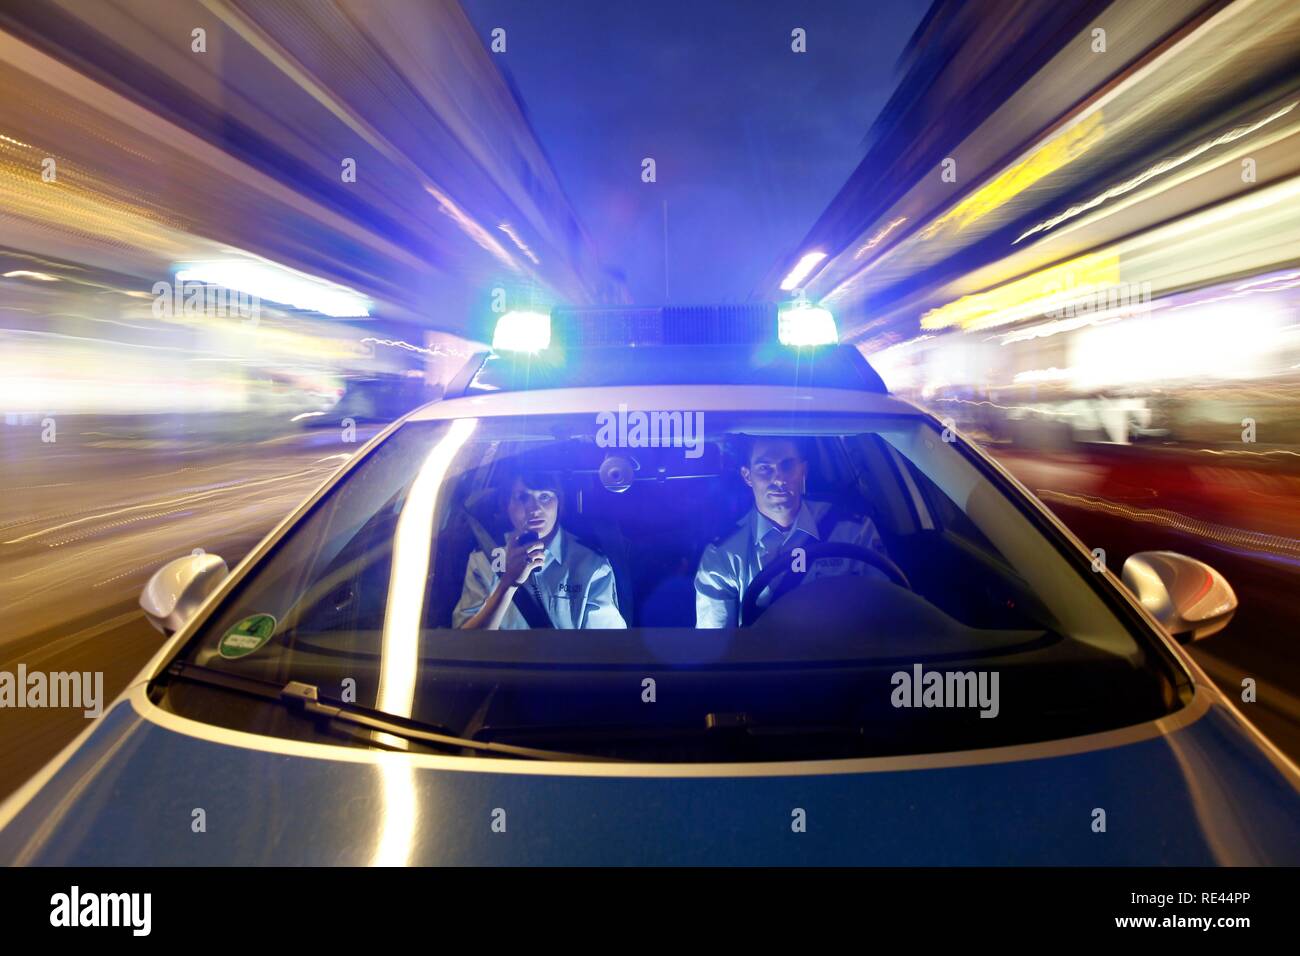 Polizei Auto mit Blaulicht bei Nacht in einer Stadt foto de Stock